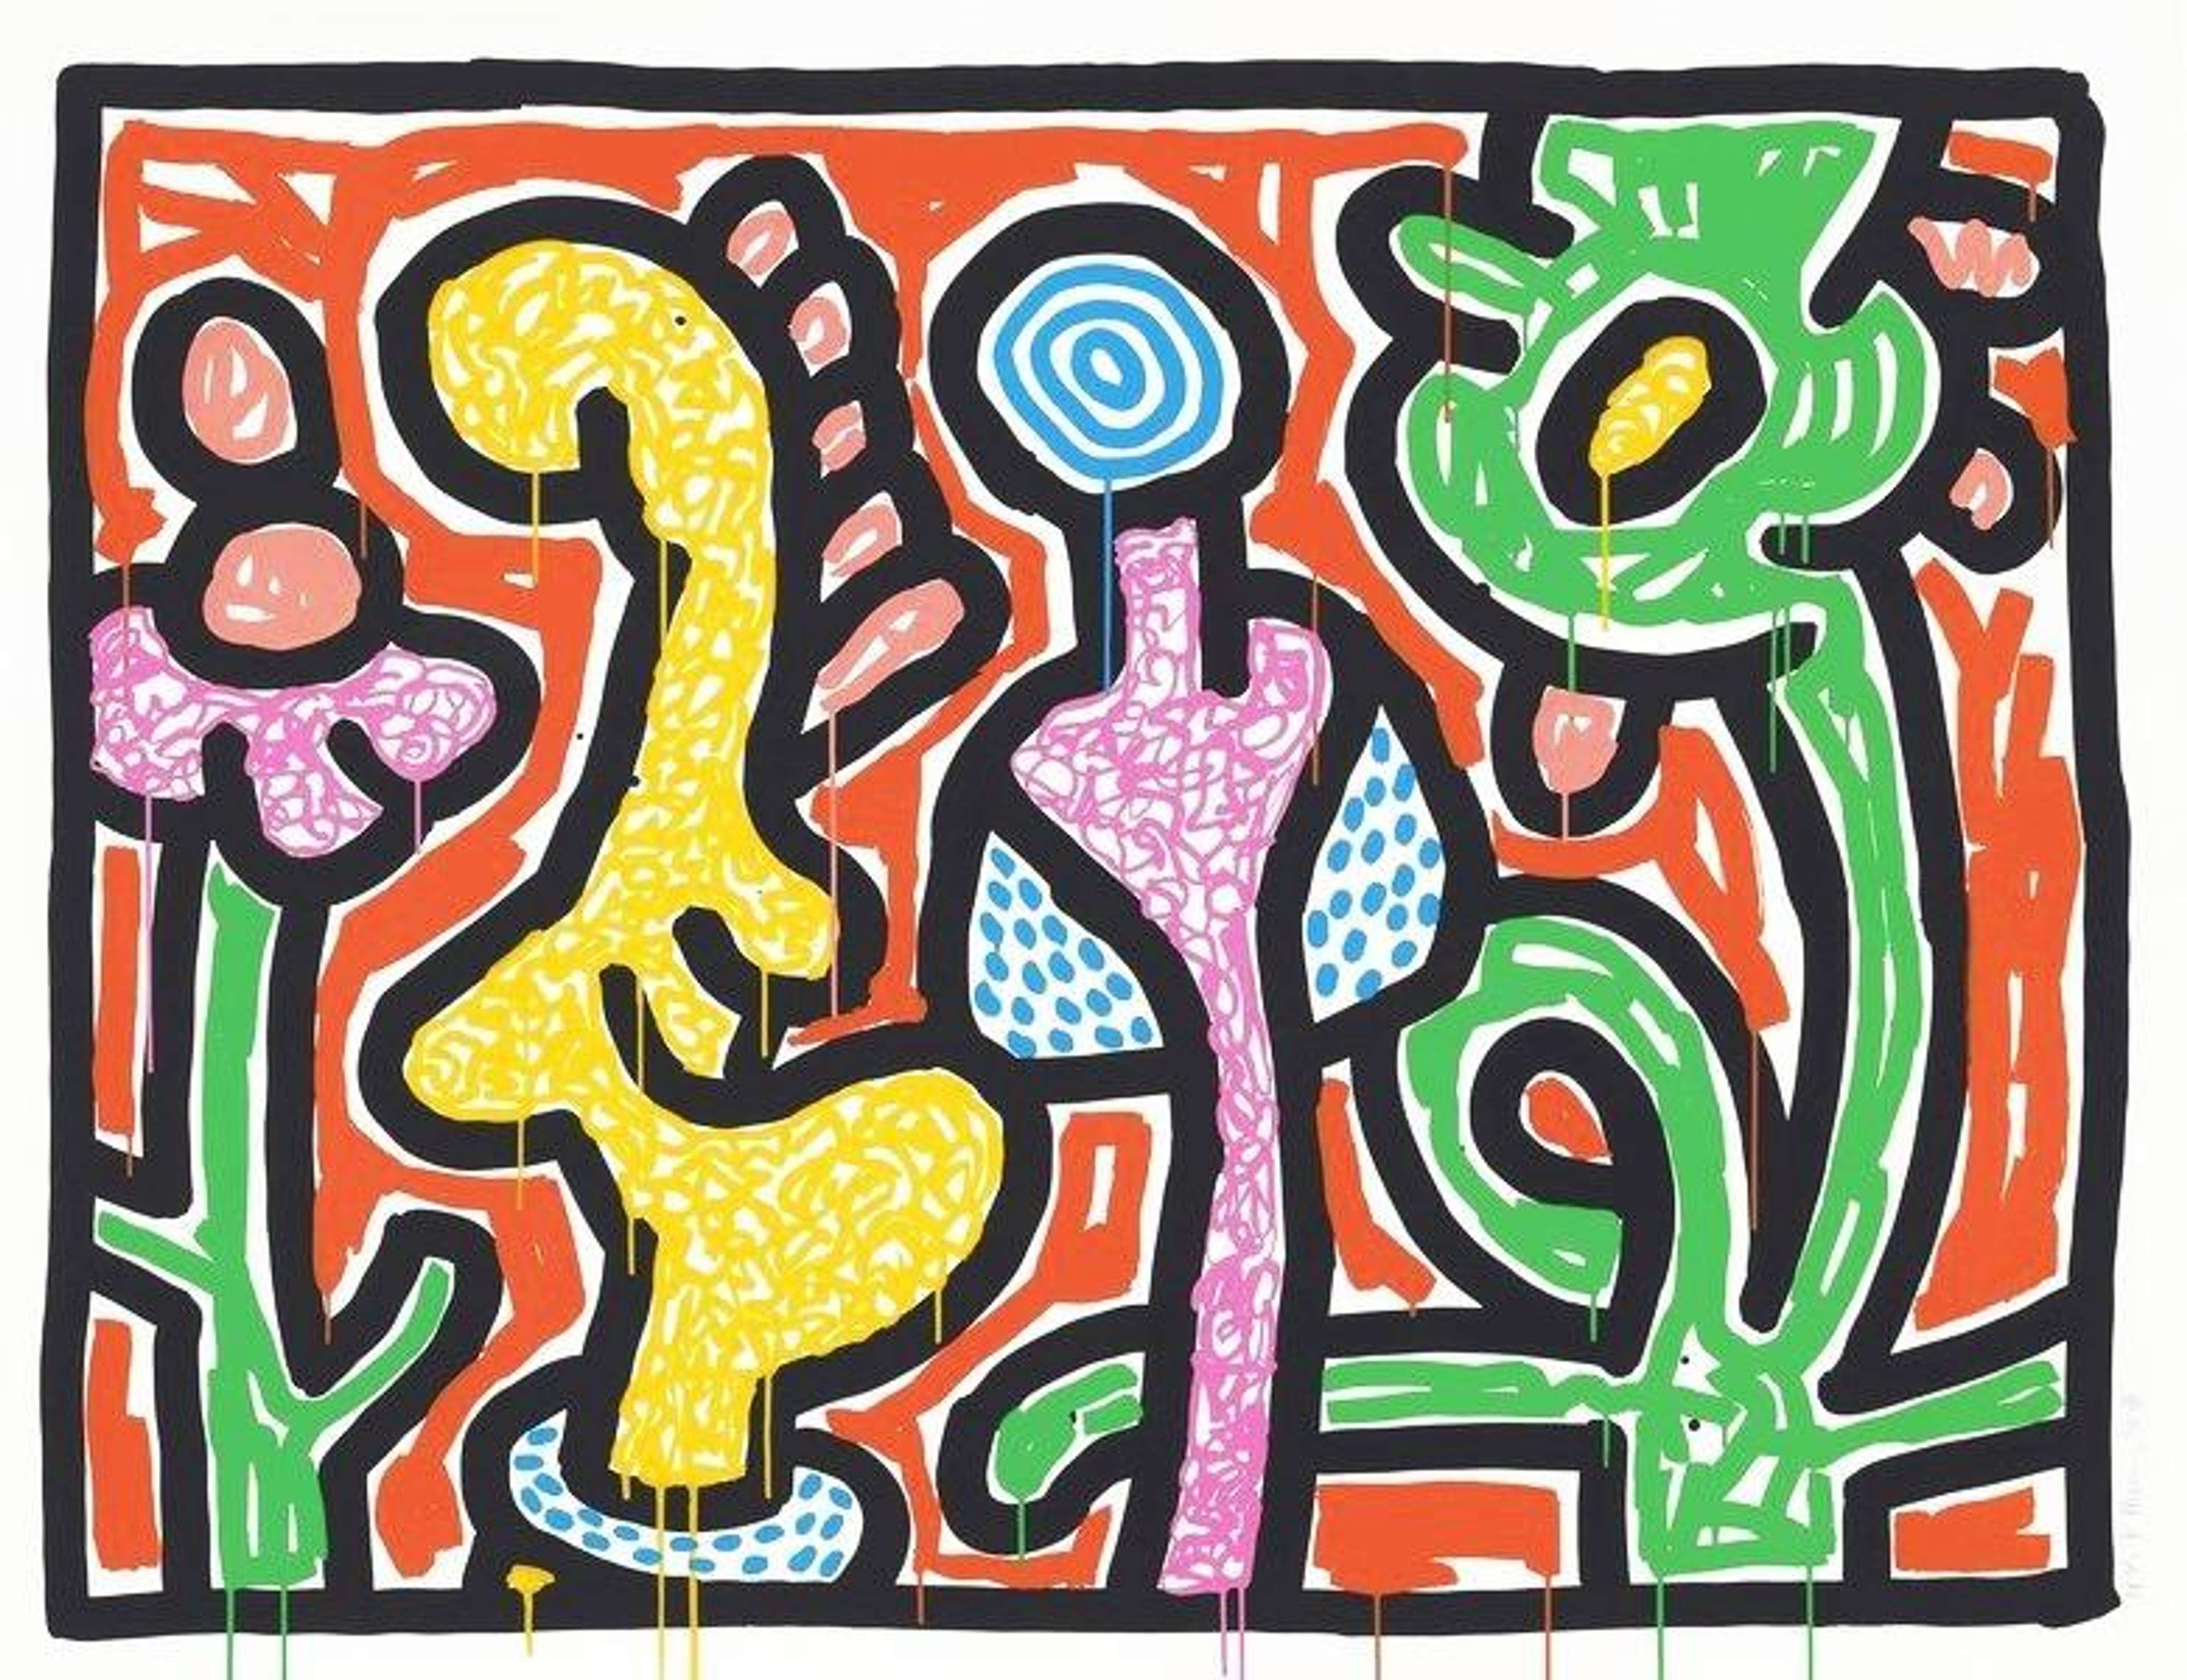 Flowers IV by Keith Haring - MyArtBroker 